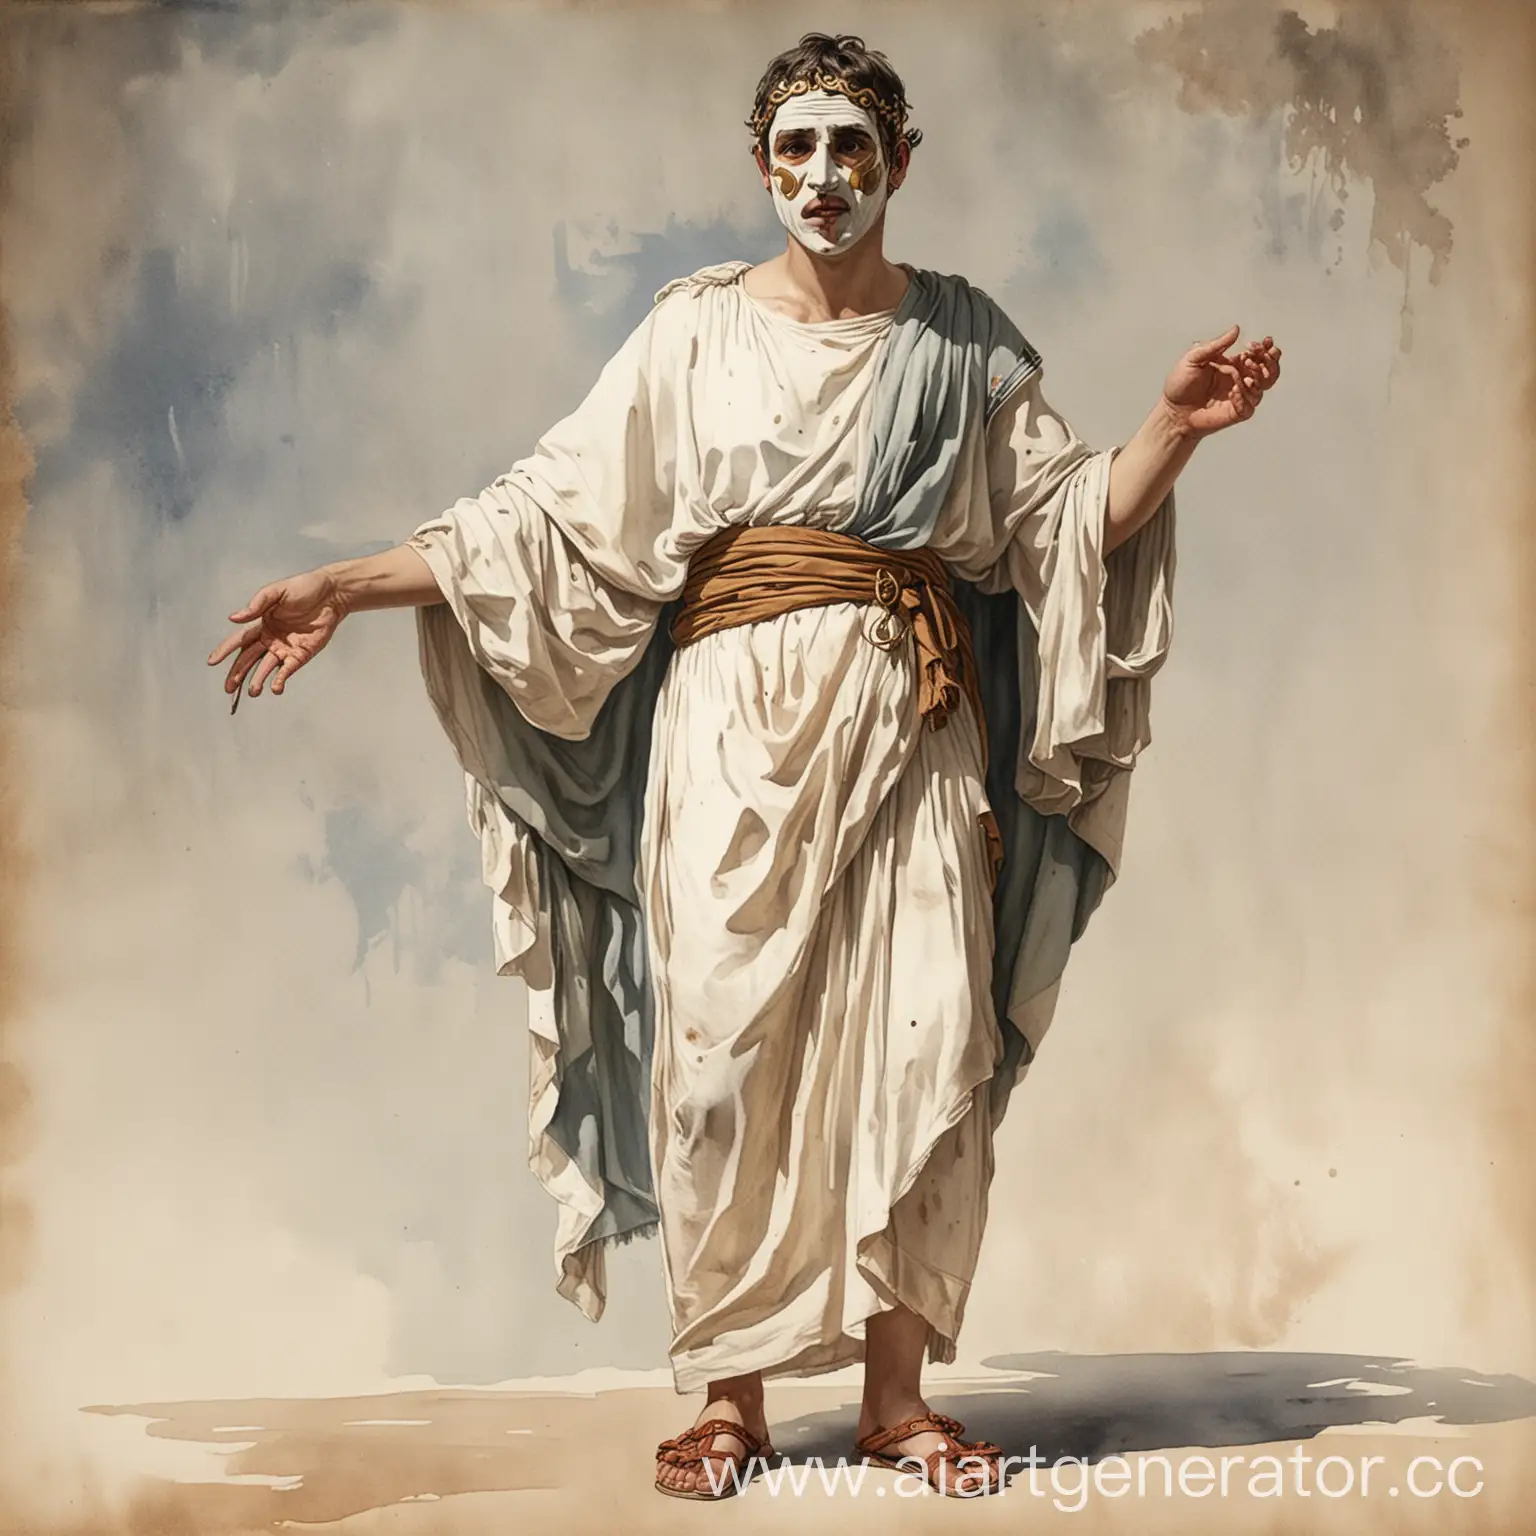 древний грек одет в тогу. в полный рост. техника акварель. в левой руке маска трагедии, в правой руке маска комедии. на ногах одеты котурны, голова поднята вверх